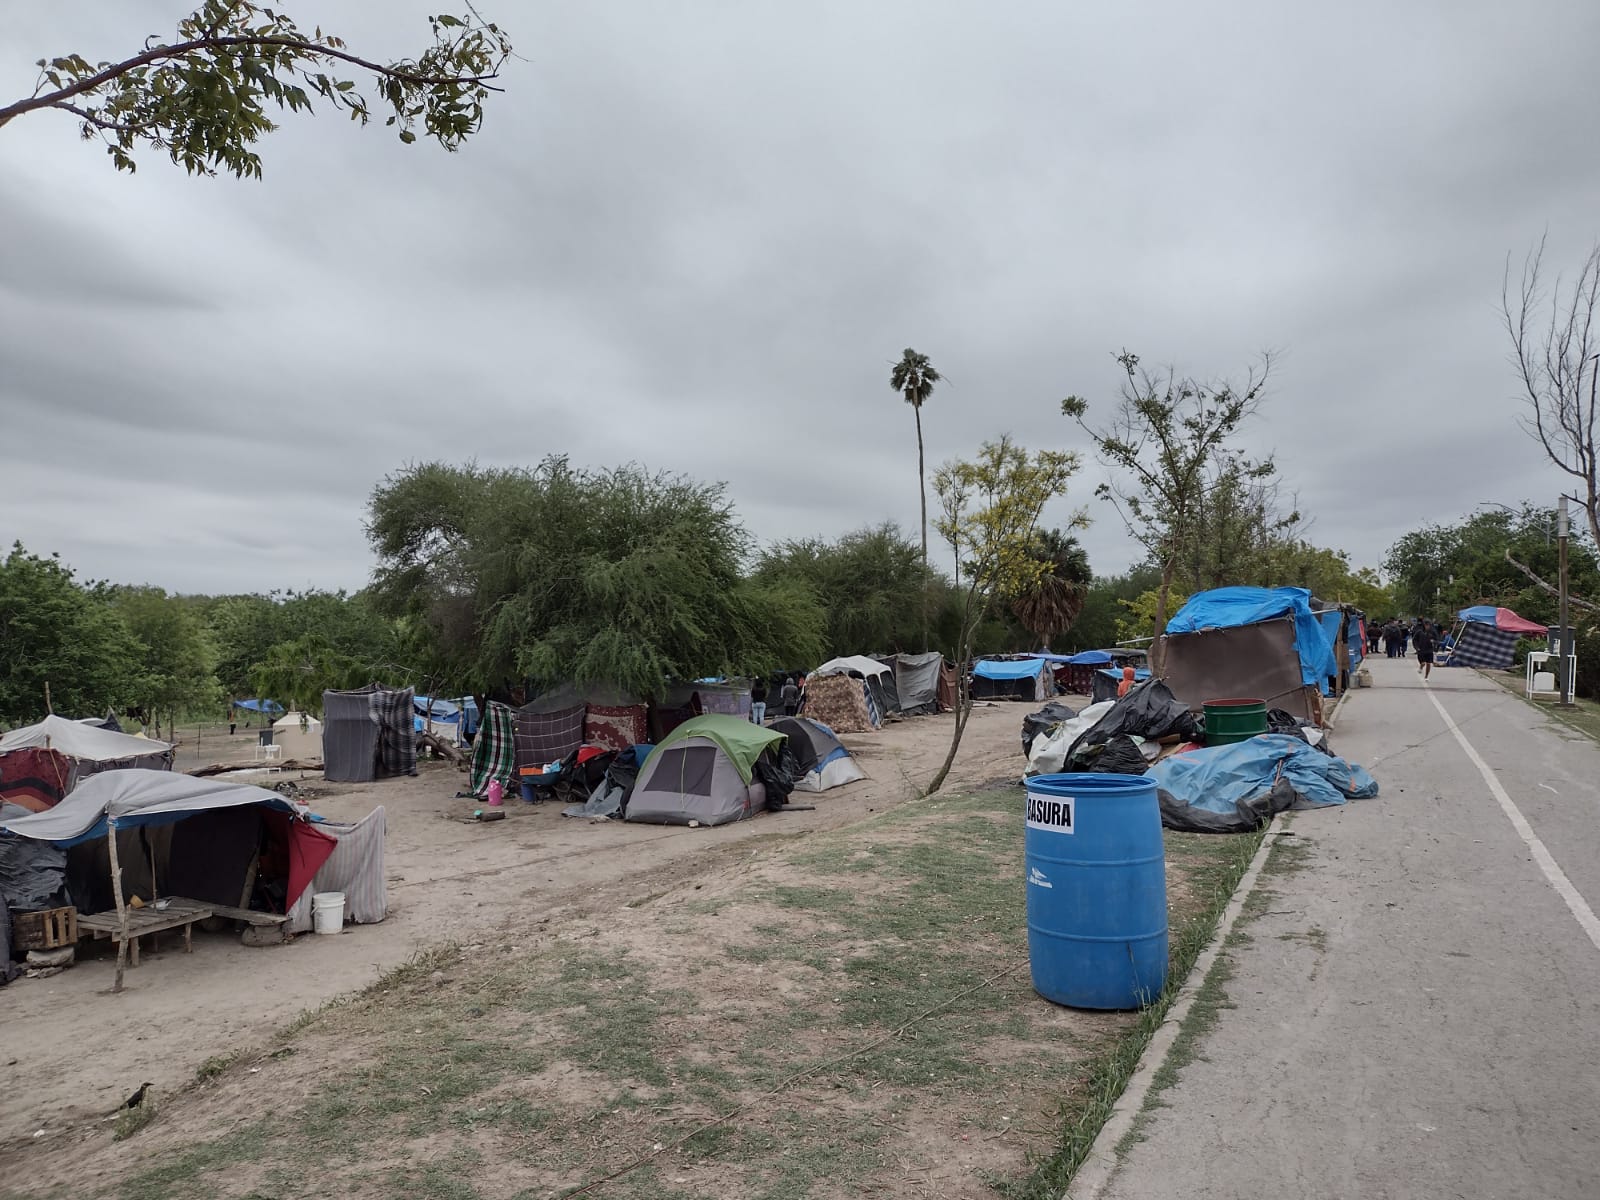 MSF junto con la comunidad migrante y otros actores locales e internacionales limpiaron el espacio del campamento improvisado en el bordo del río Bravo